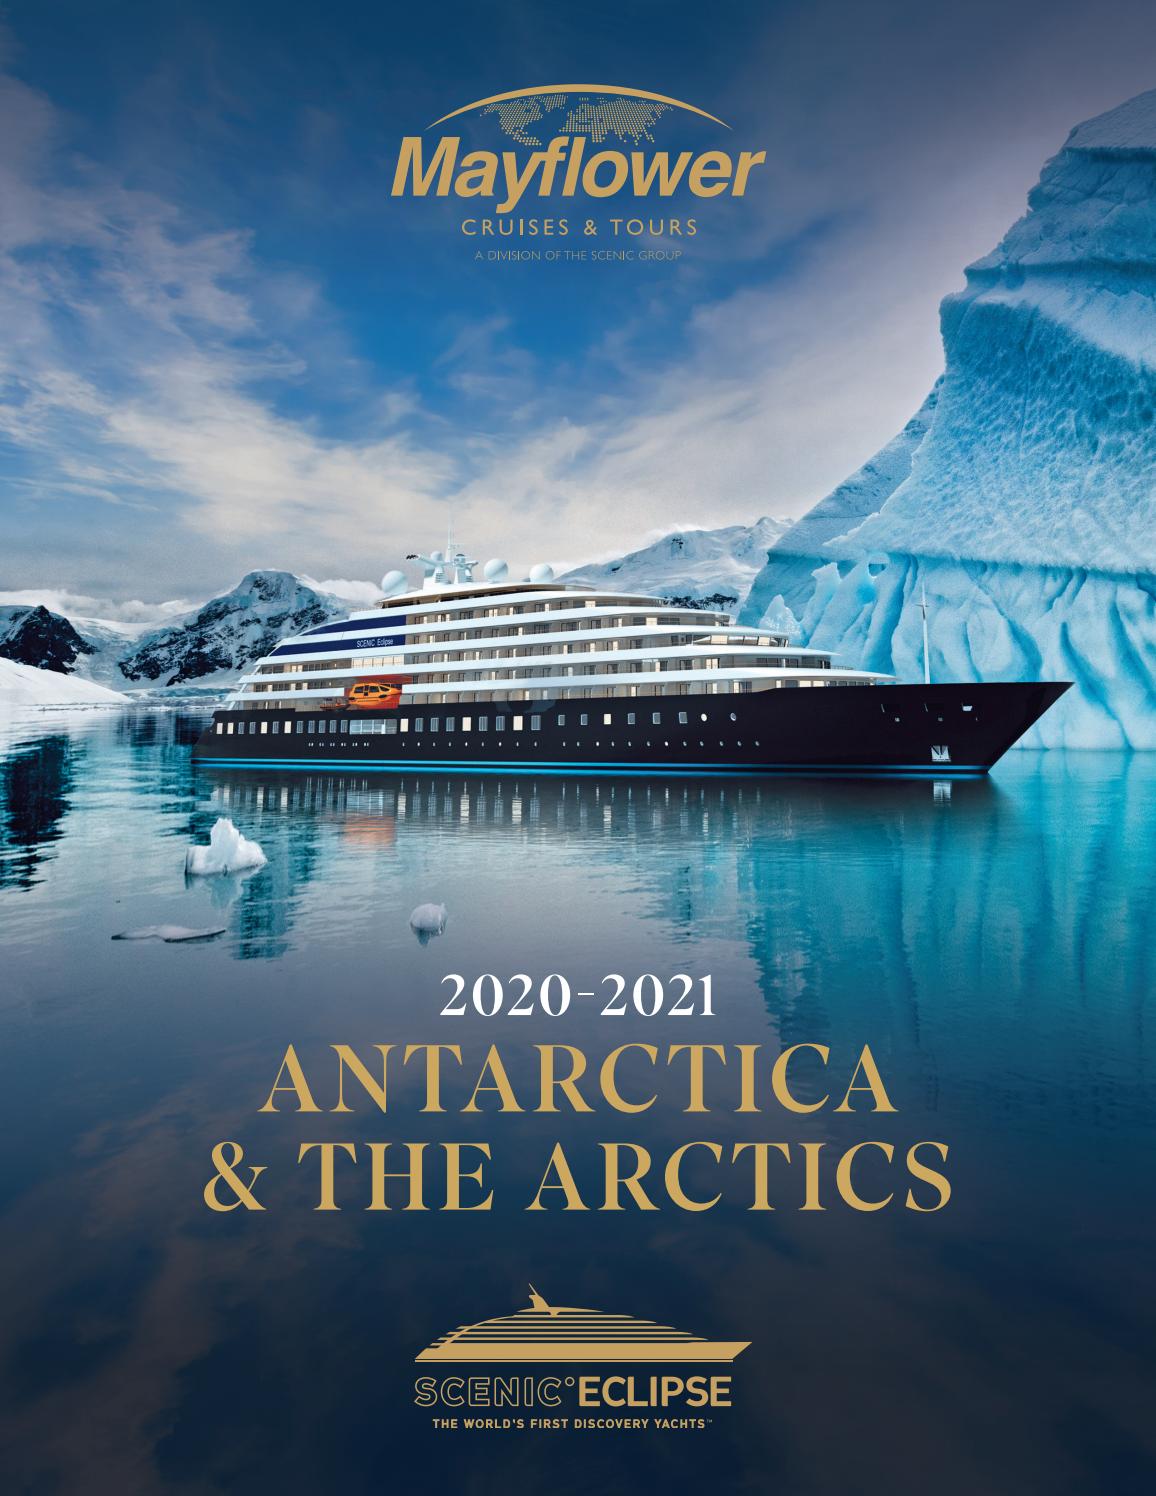 2020-2021 Scenic Eclipse Antarctica & The Arctics